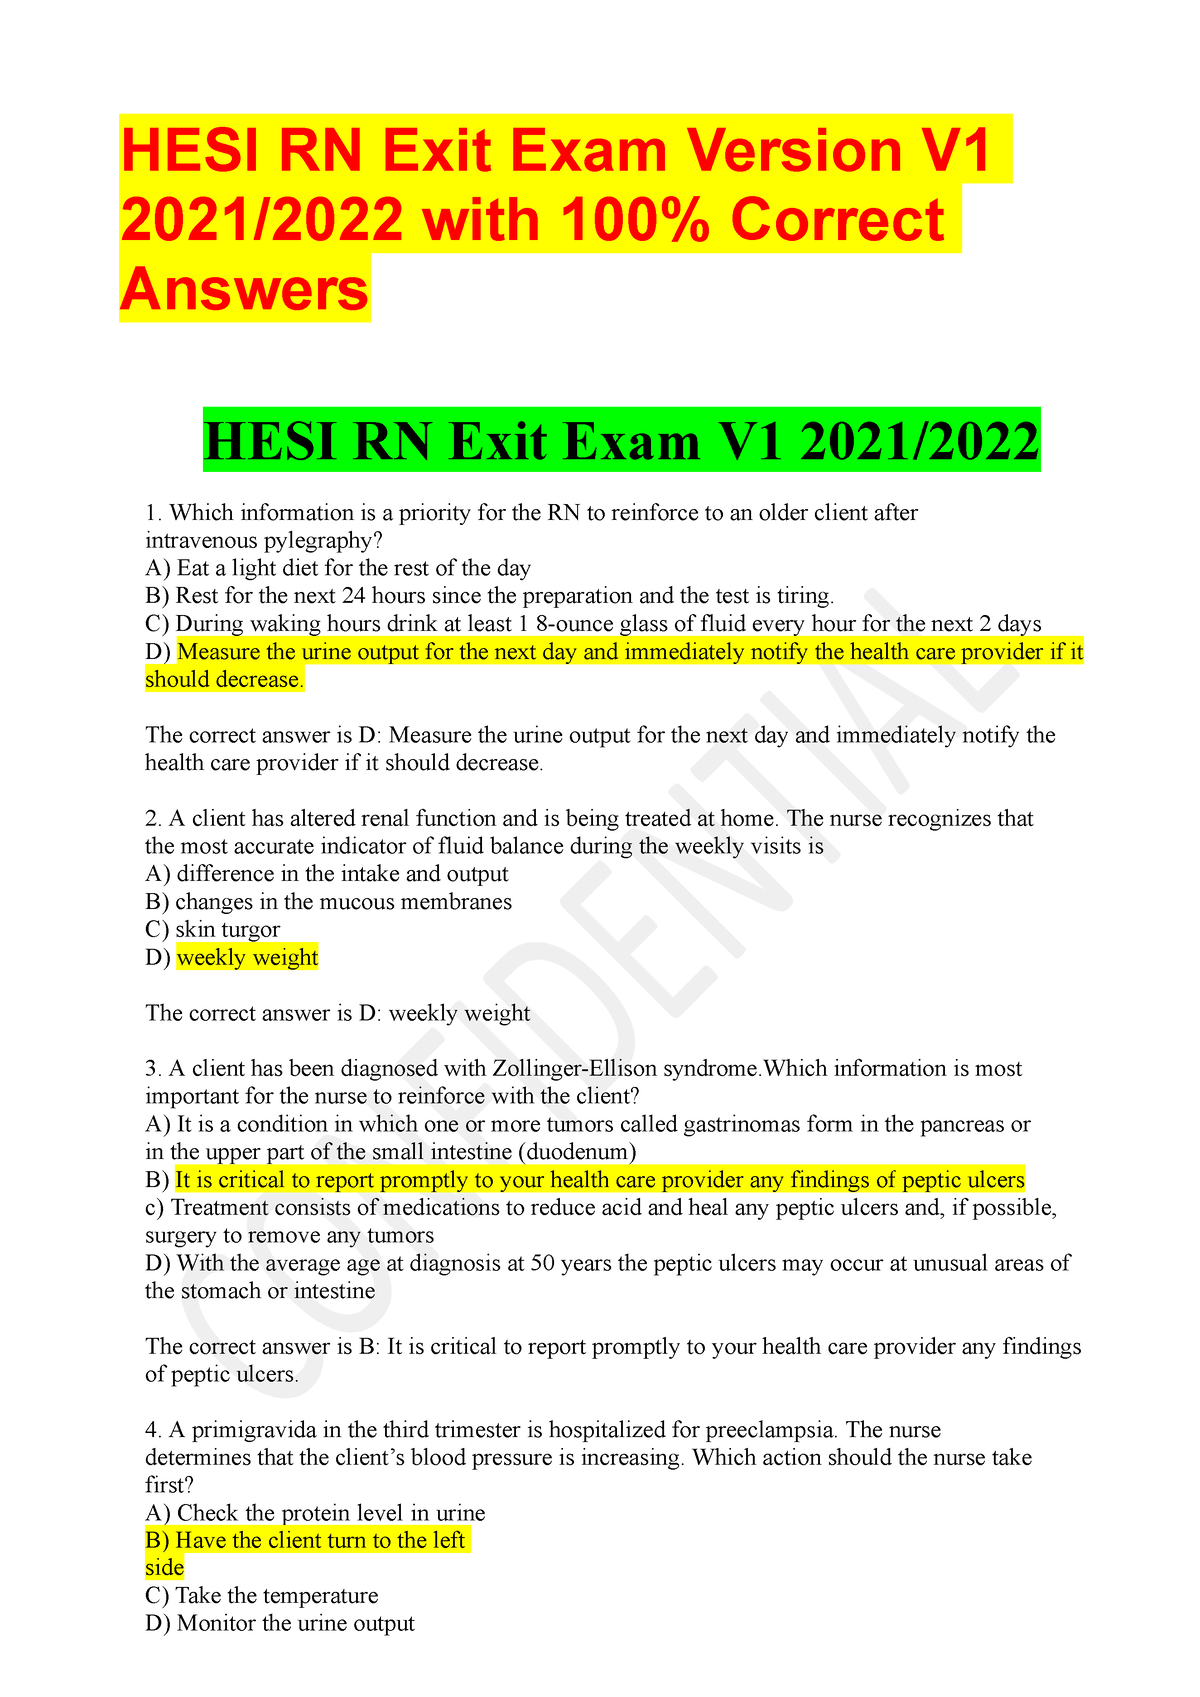 Hesirnexitexamv120212022 HESI RN Exit Exam Version V 2021/2022